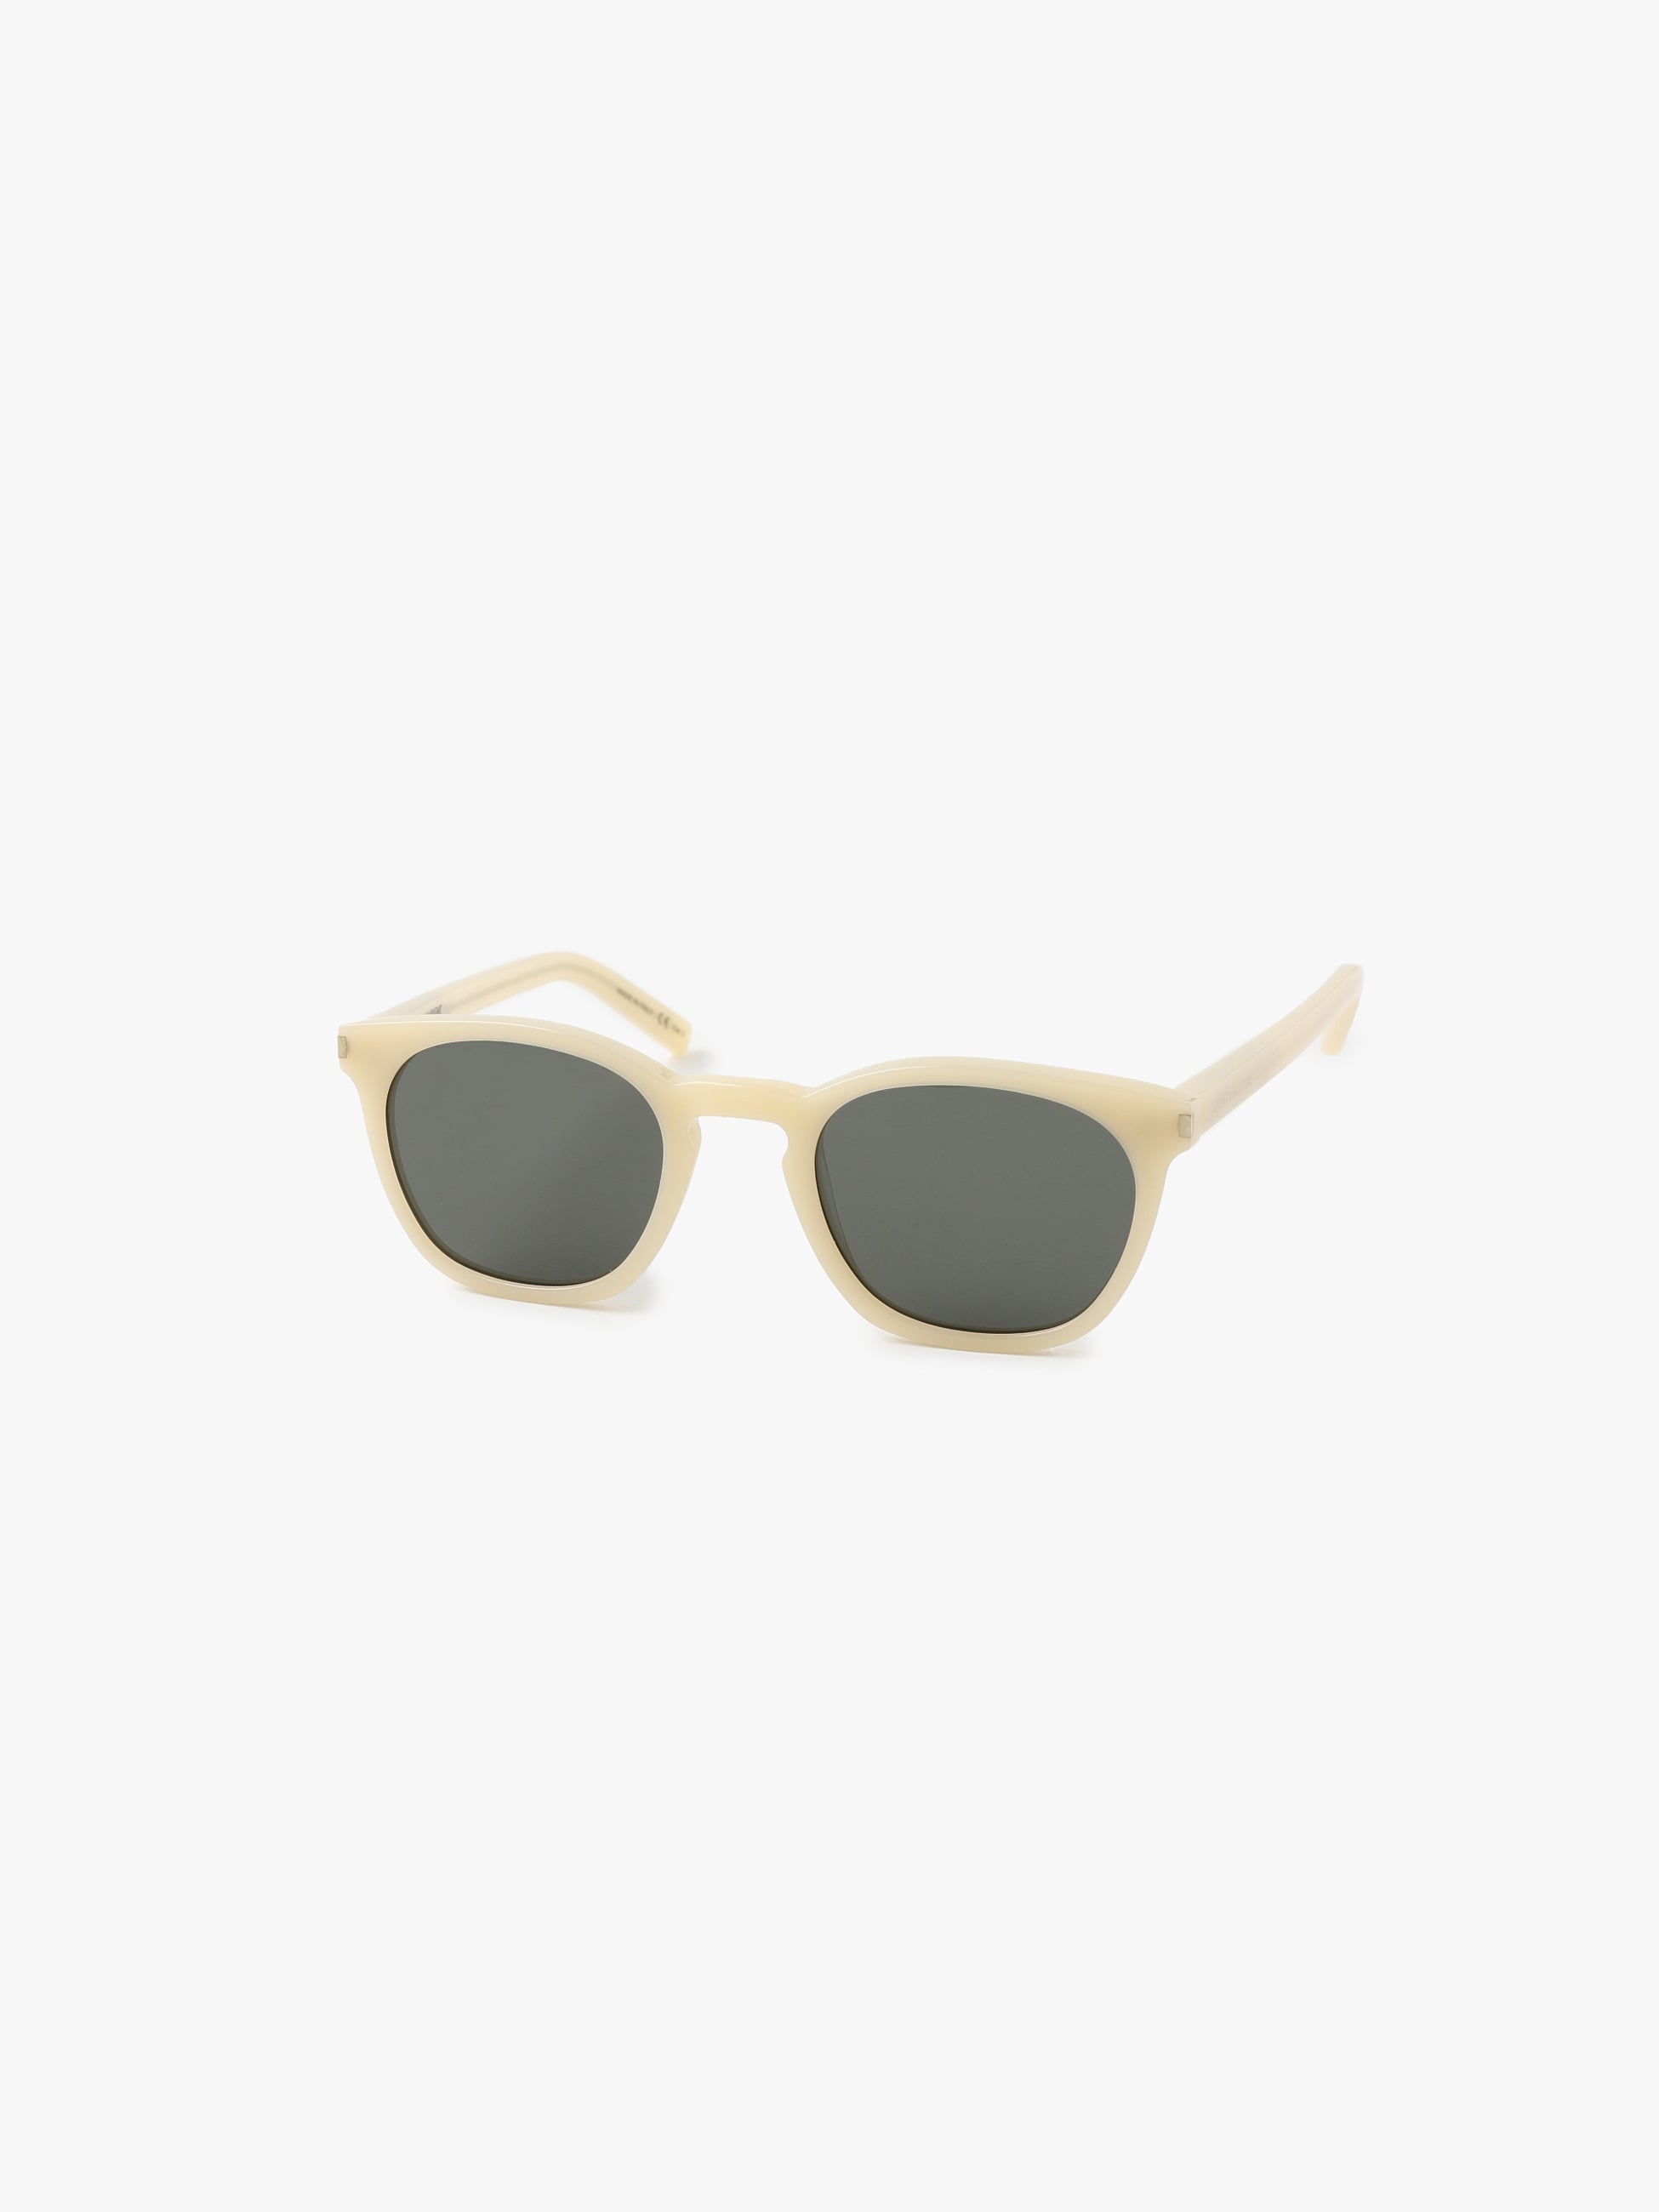 Sunglasses (SL28) 詳細画像 white 1